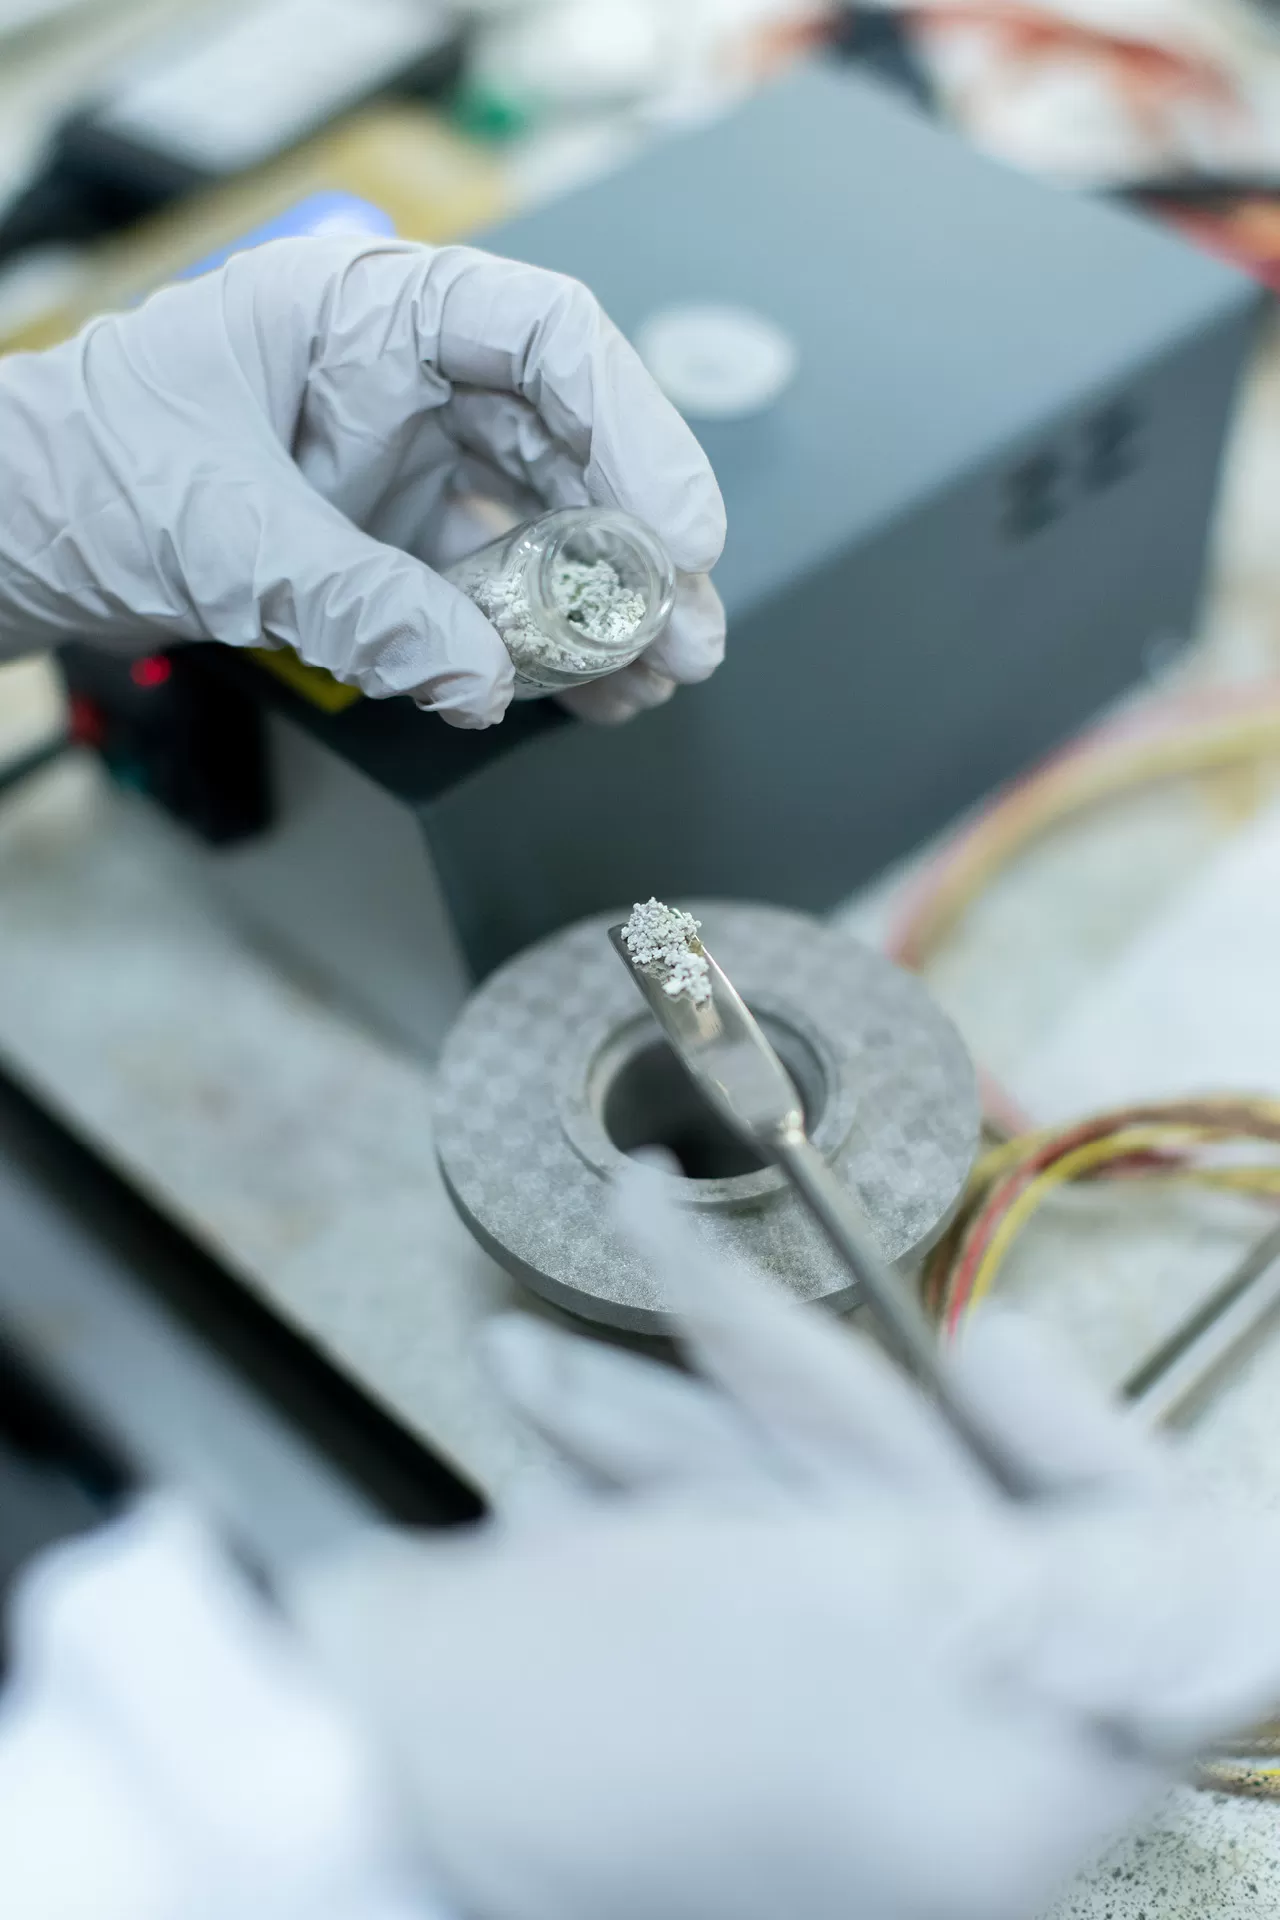 Nahaufnahme von Händen mit Laborhandschuhen, die Pulver auf Metalllöffel abmisst. Eine Ingenieurin entwickelt saubere Energiespeicherlösungen.